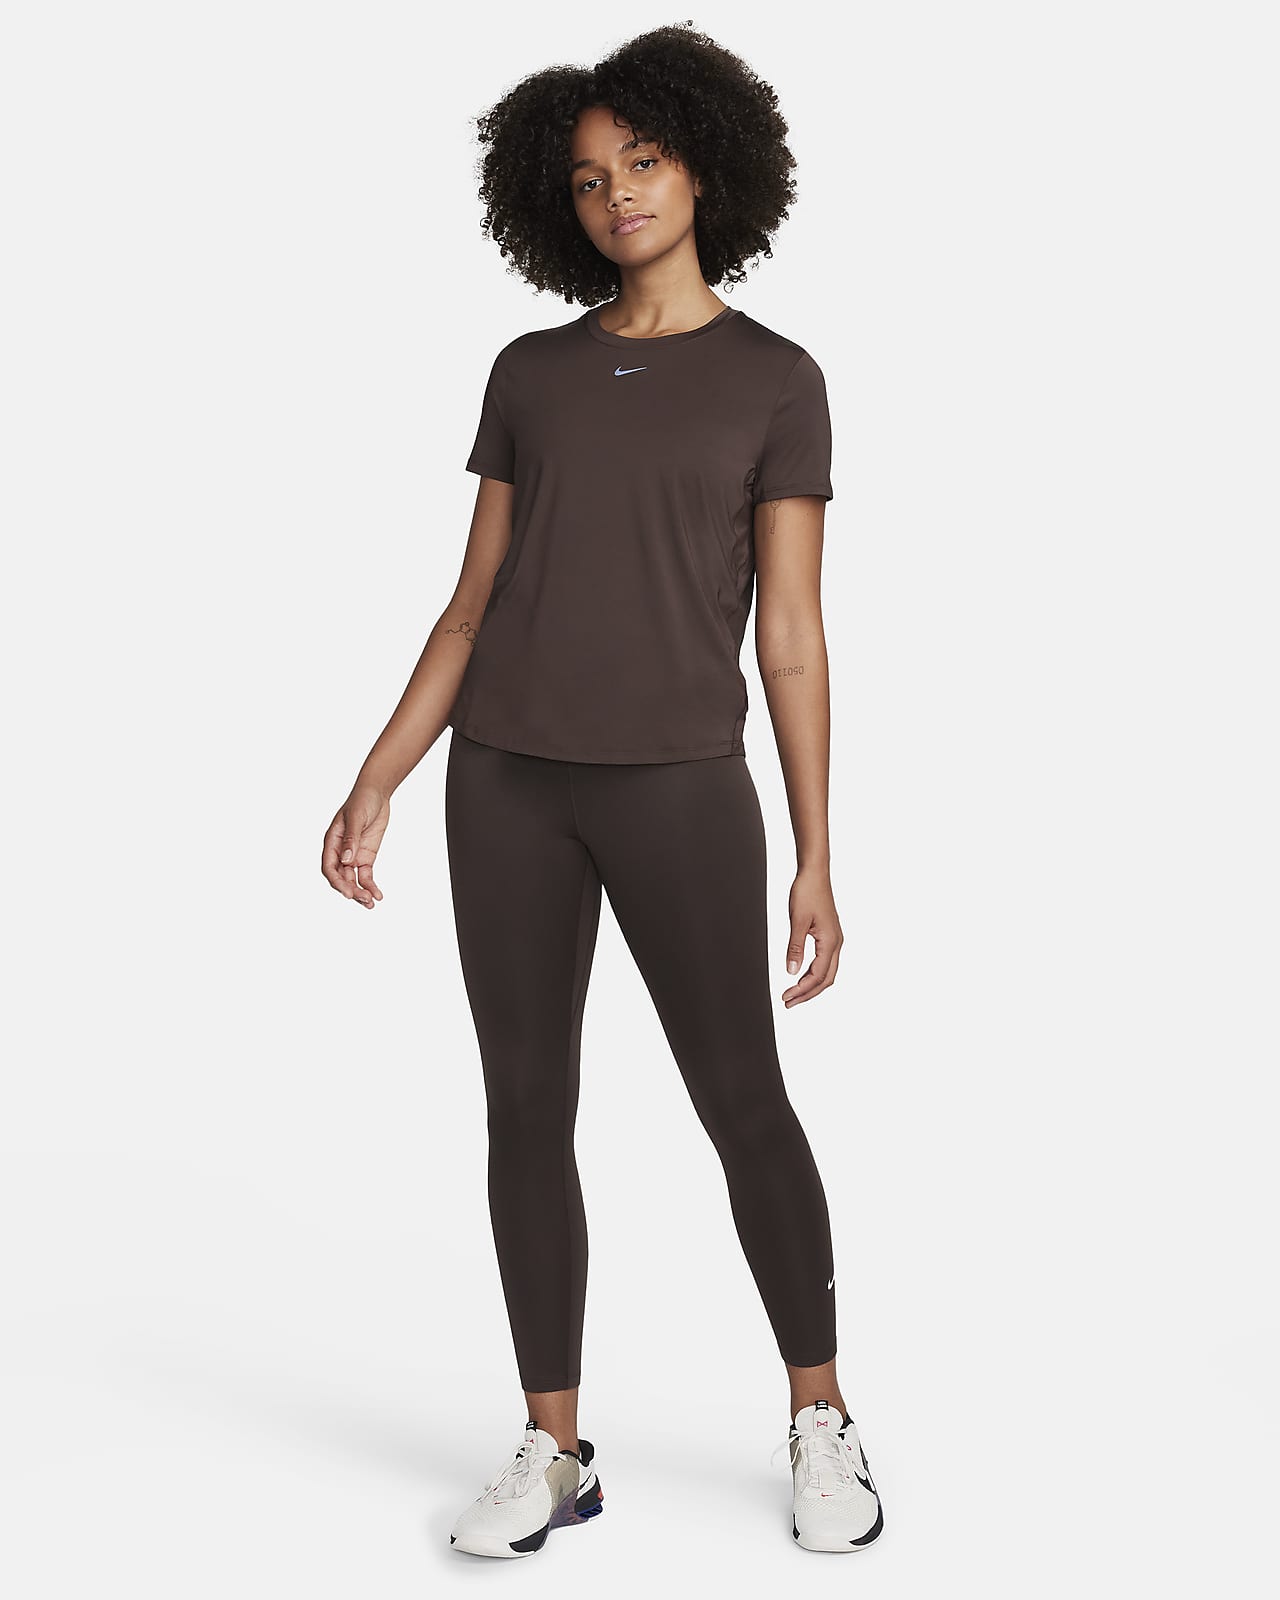 Buy Nike High-Waisted 7/8 - Women's Leggings online